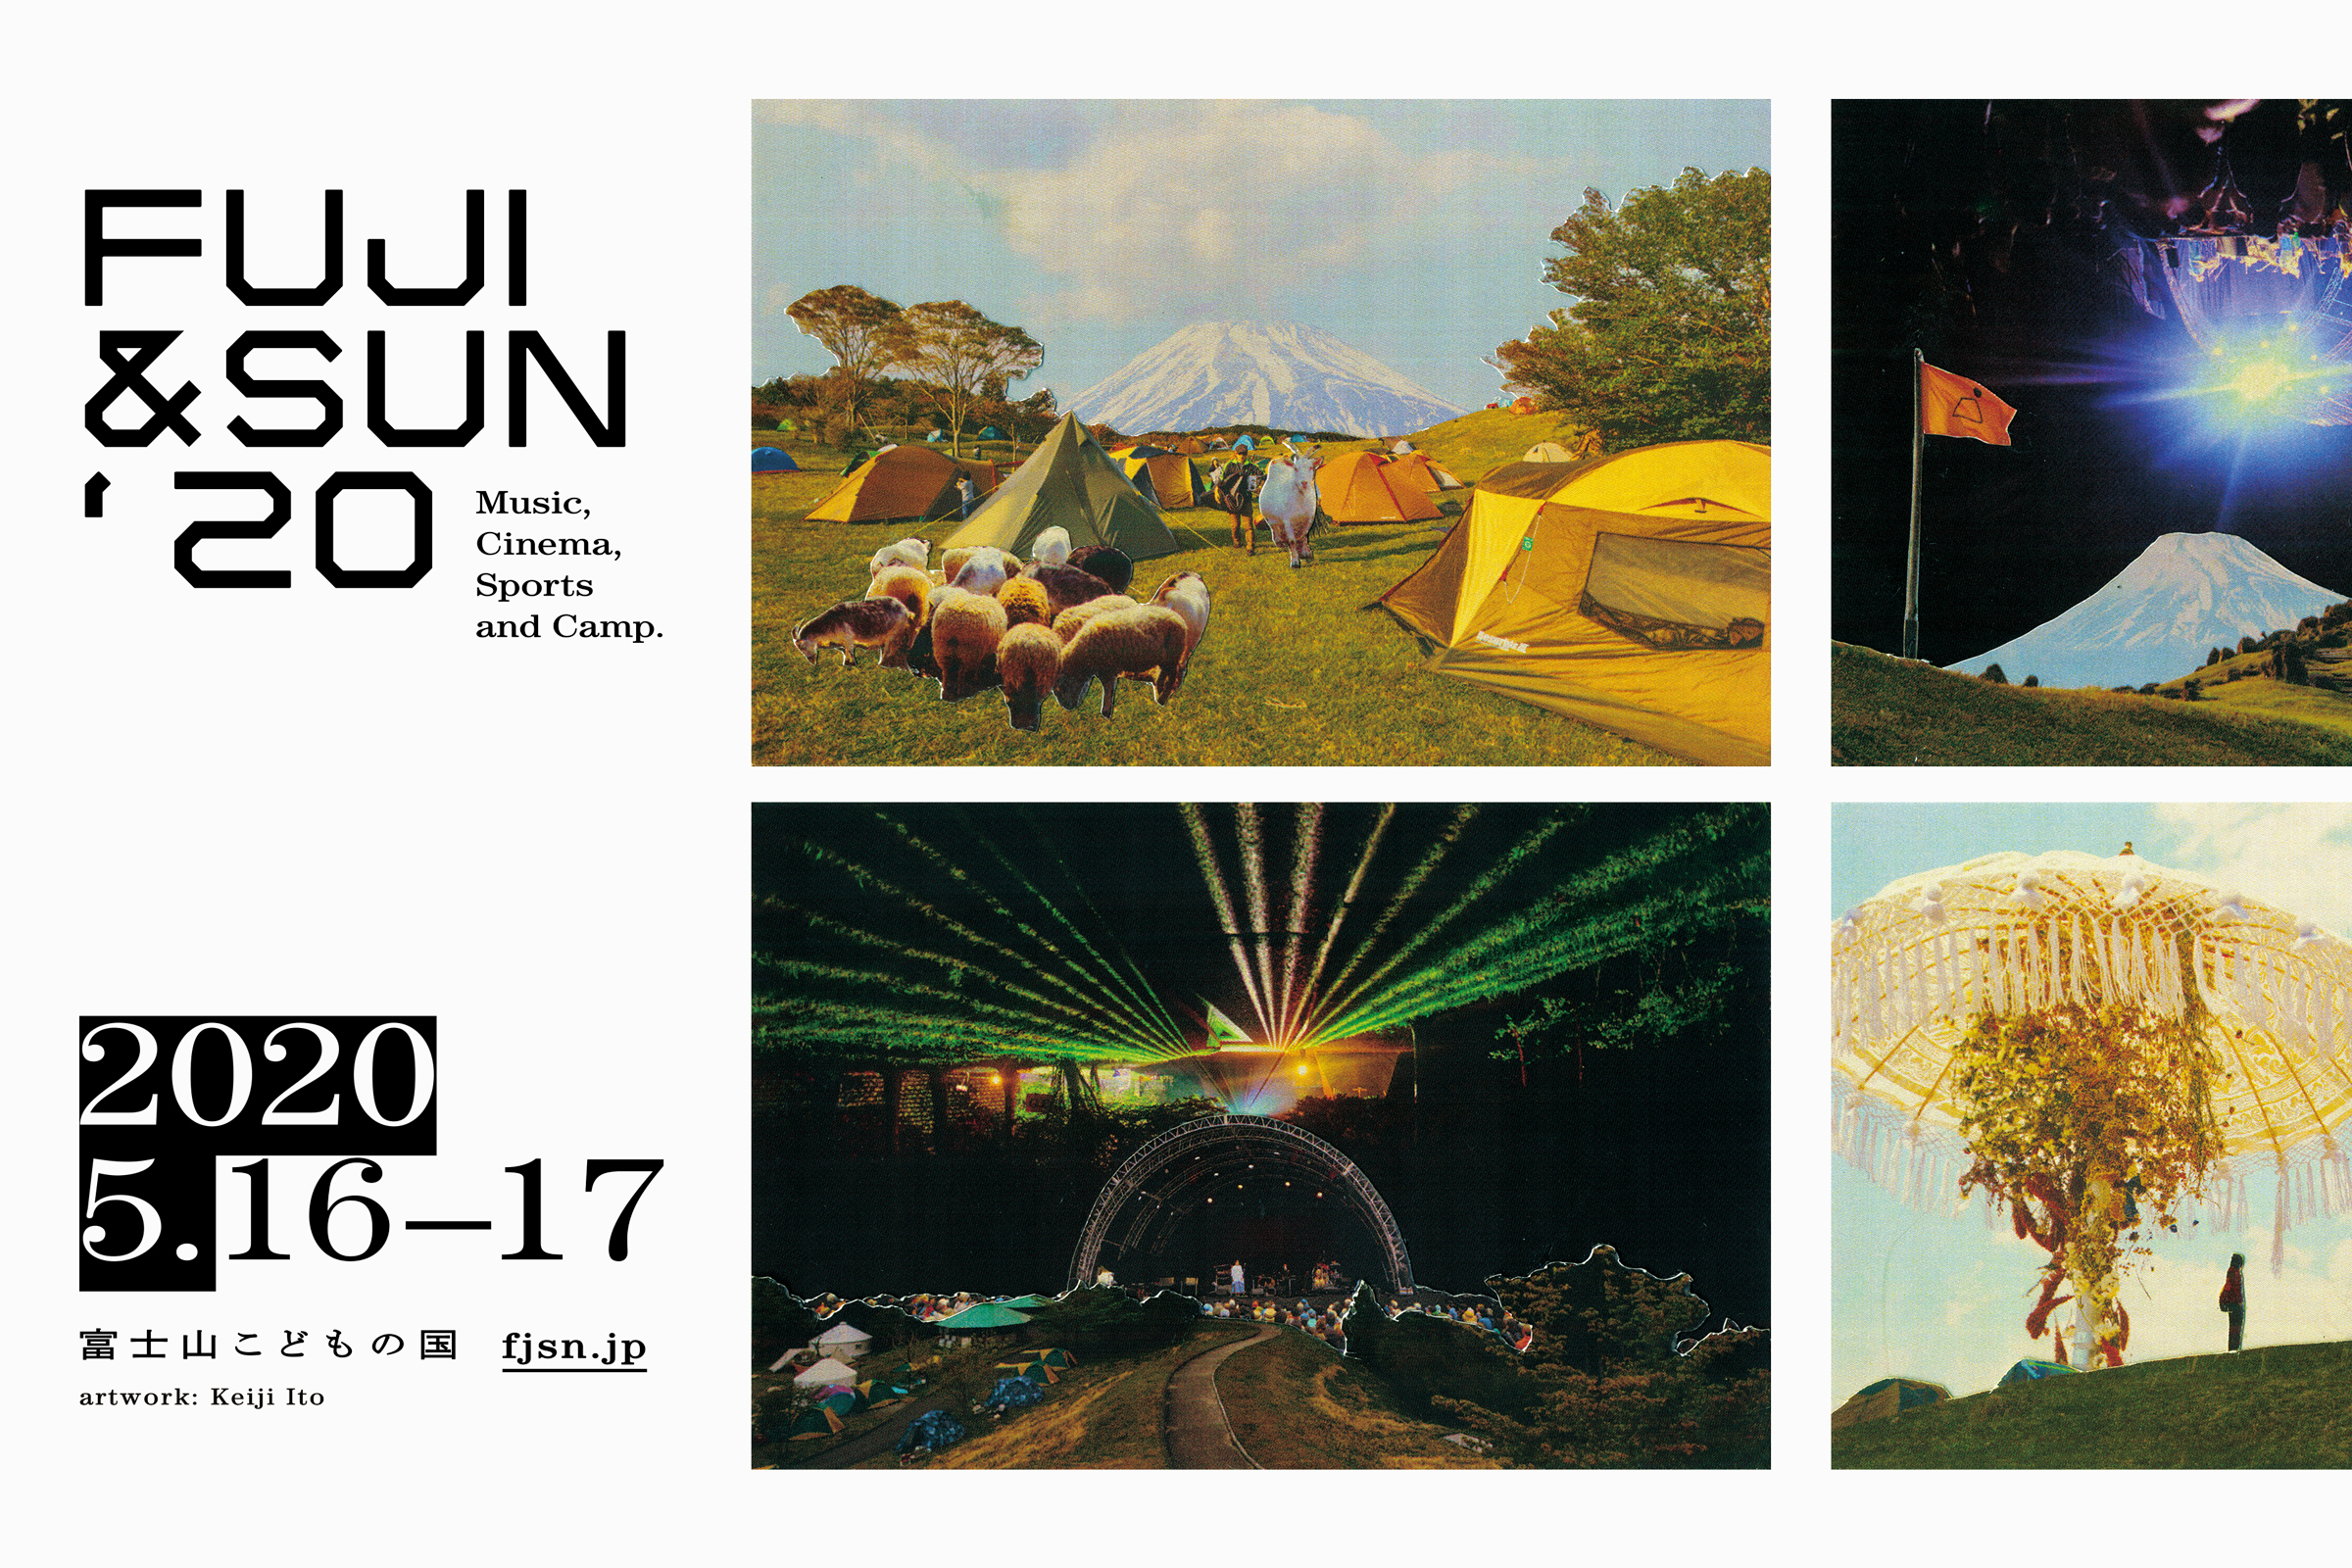 「富士を望むキャンプフェス「FUJI & SUN ‘20」が今年も開催！ 出演者第一弾発表＆チケット先行受付開始」のアイキャッチ画像